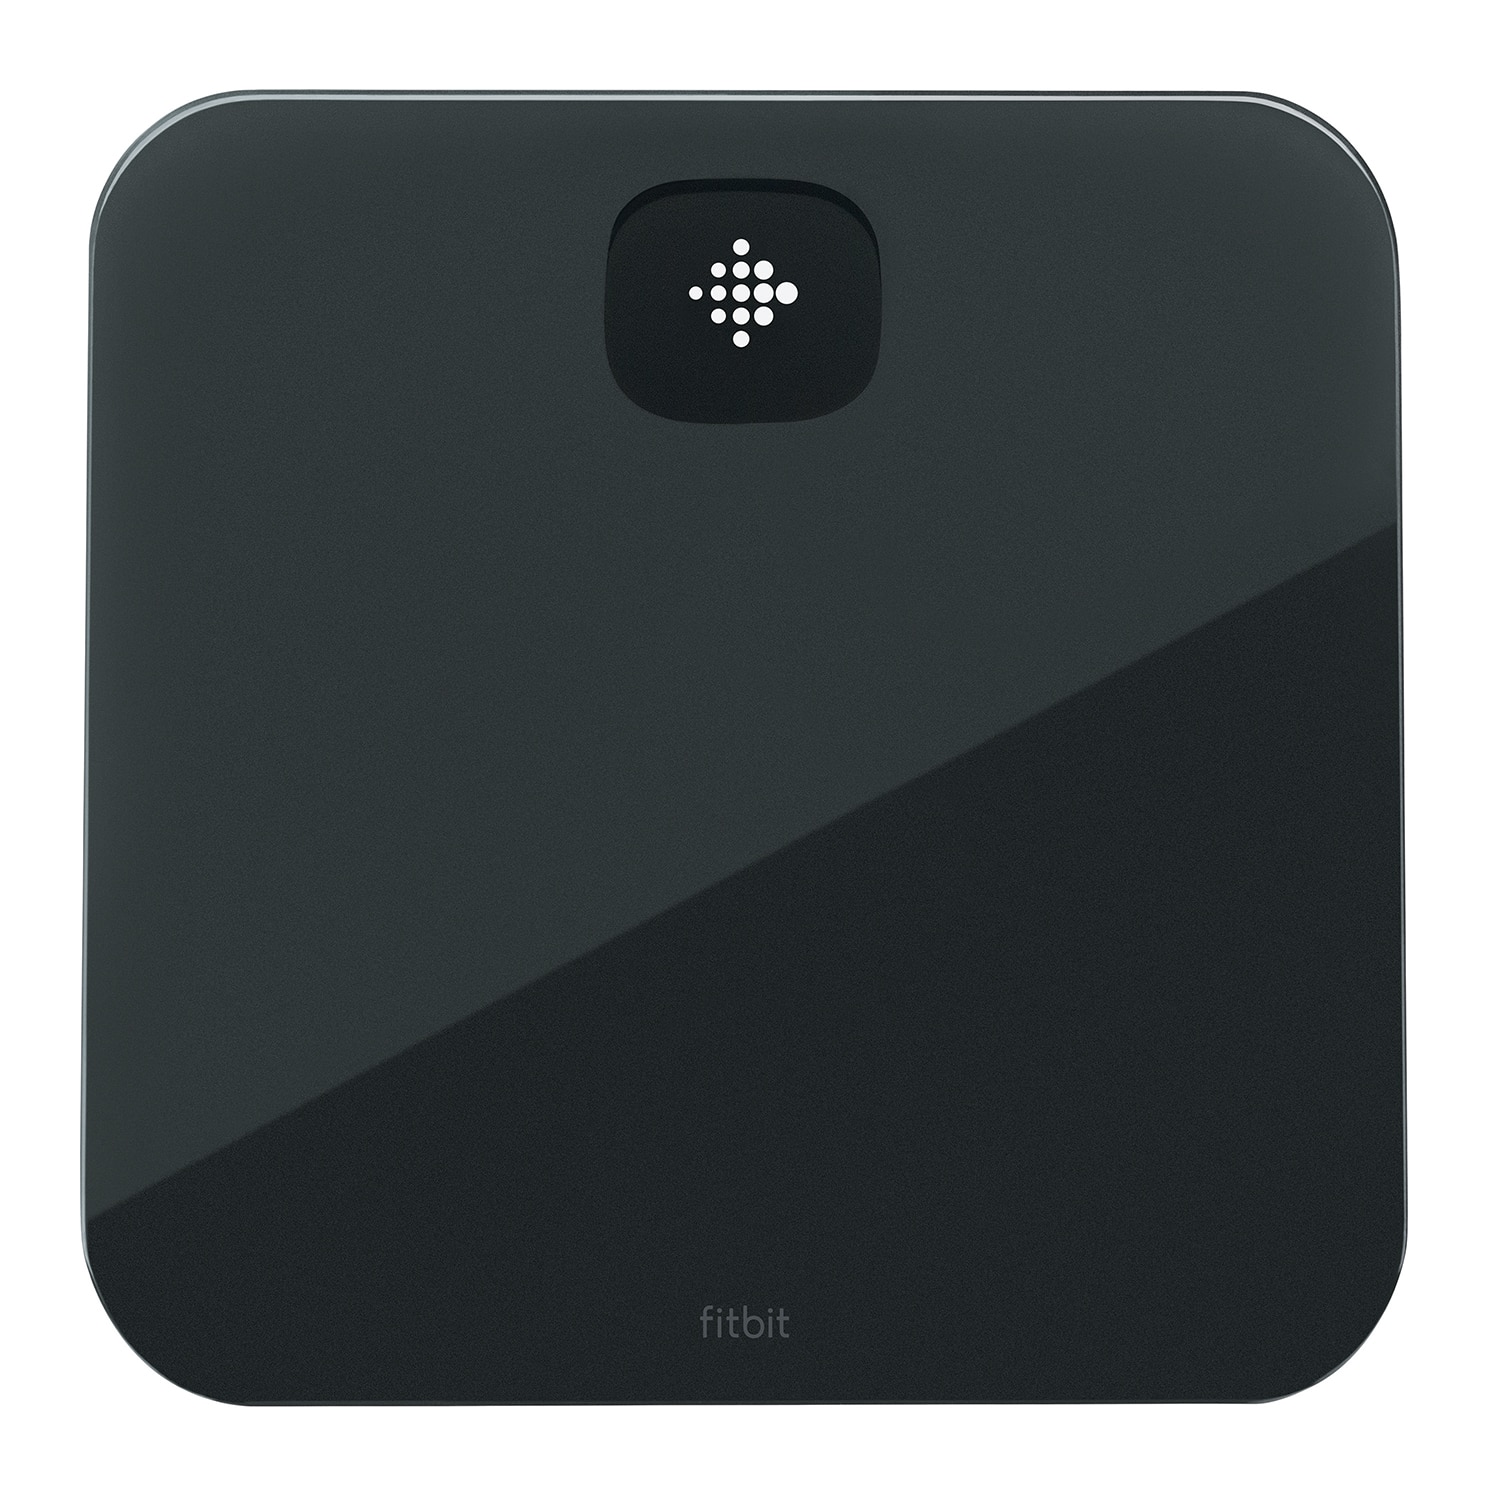 Fitbit Aria Air Bluetooth Smart Scale Black